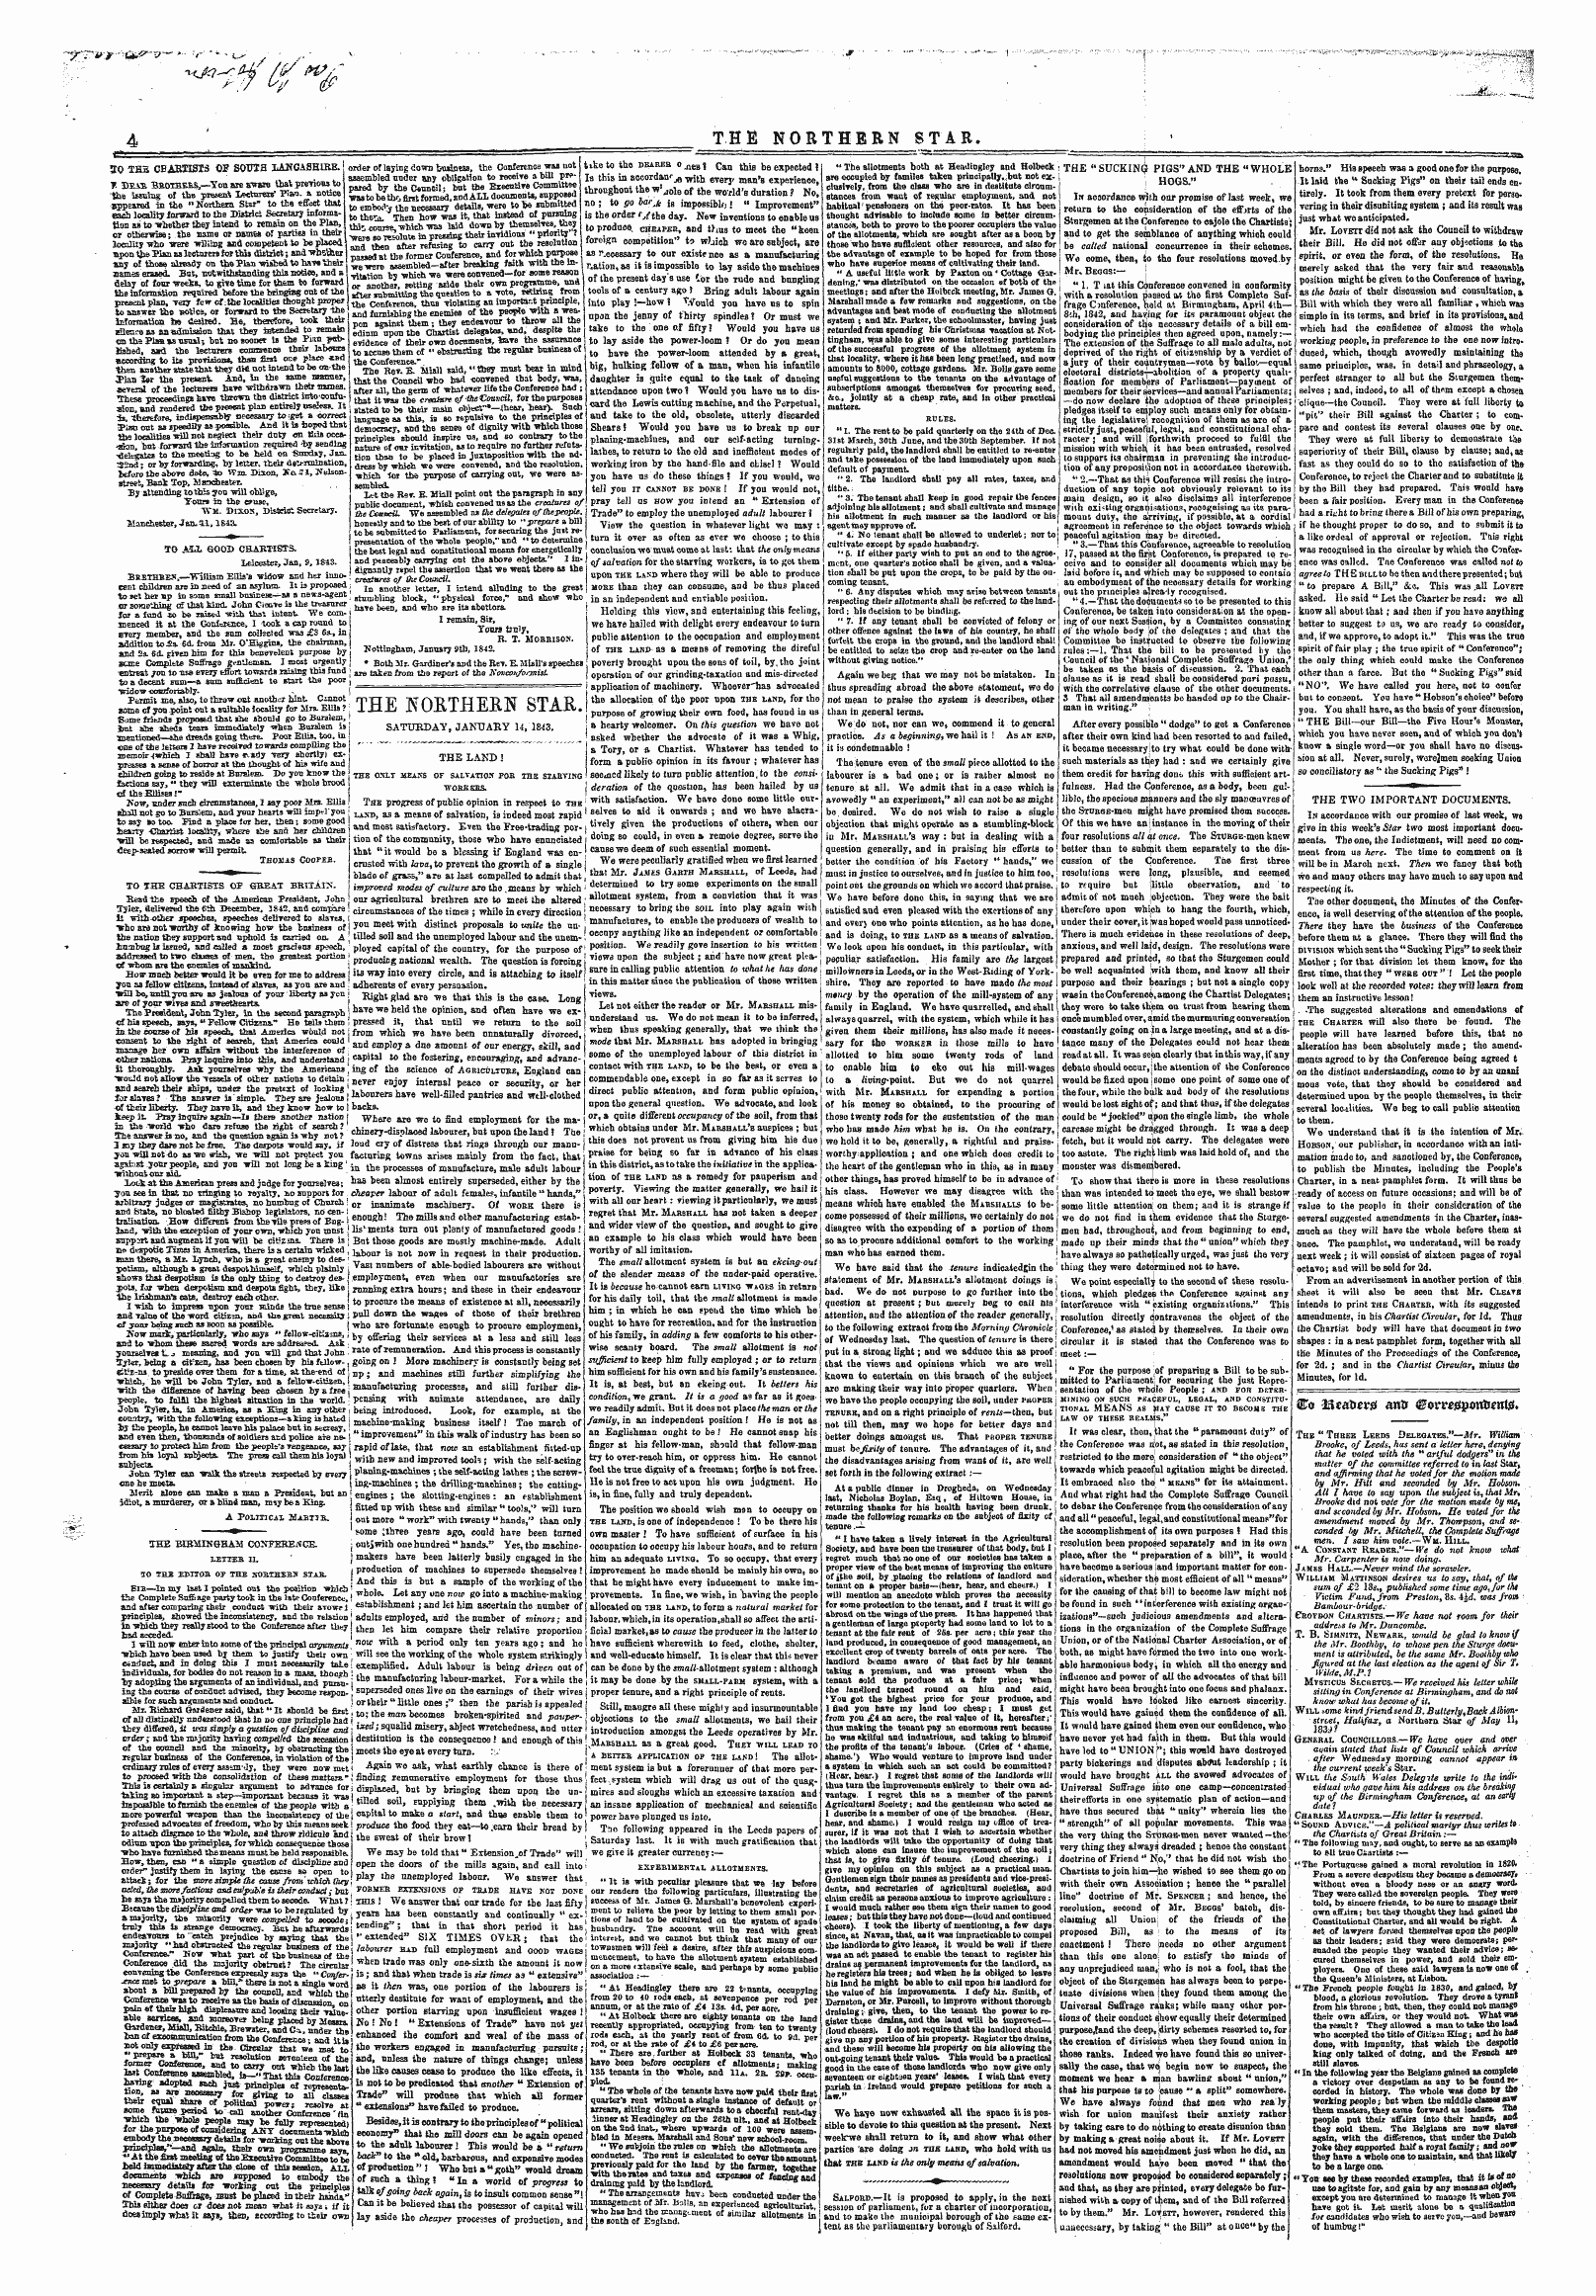 Northern Star (1837-1852): jS F Y, 4th edition - Co 2fteaftir0 Ann ^Orr^Potttifnts